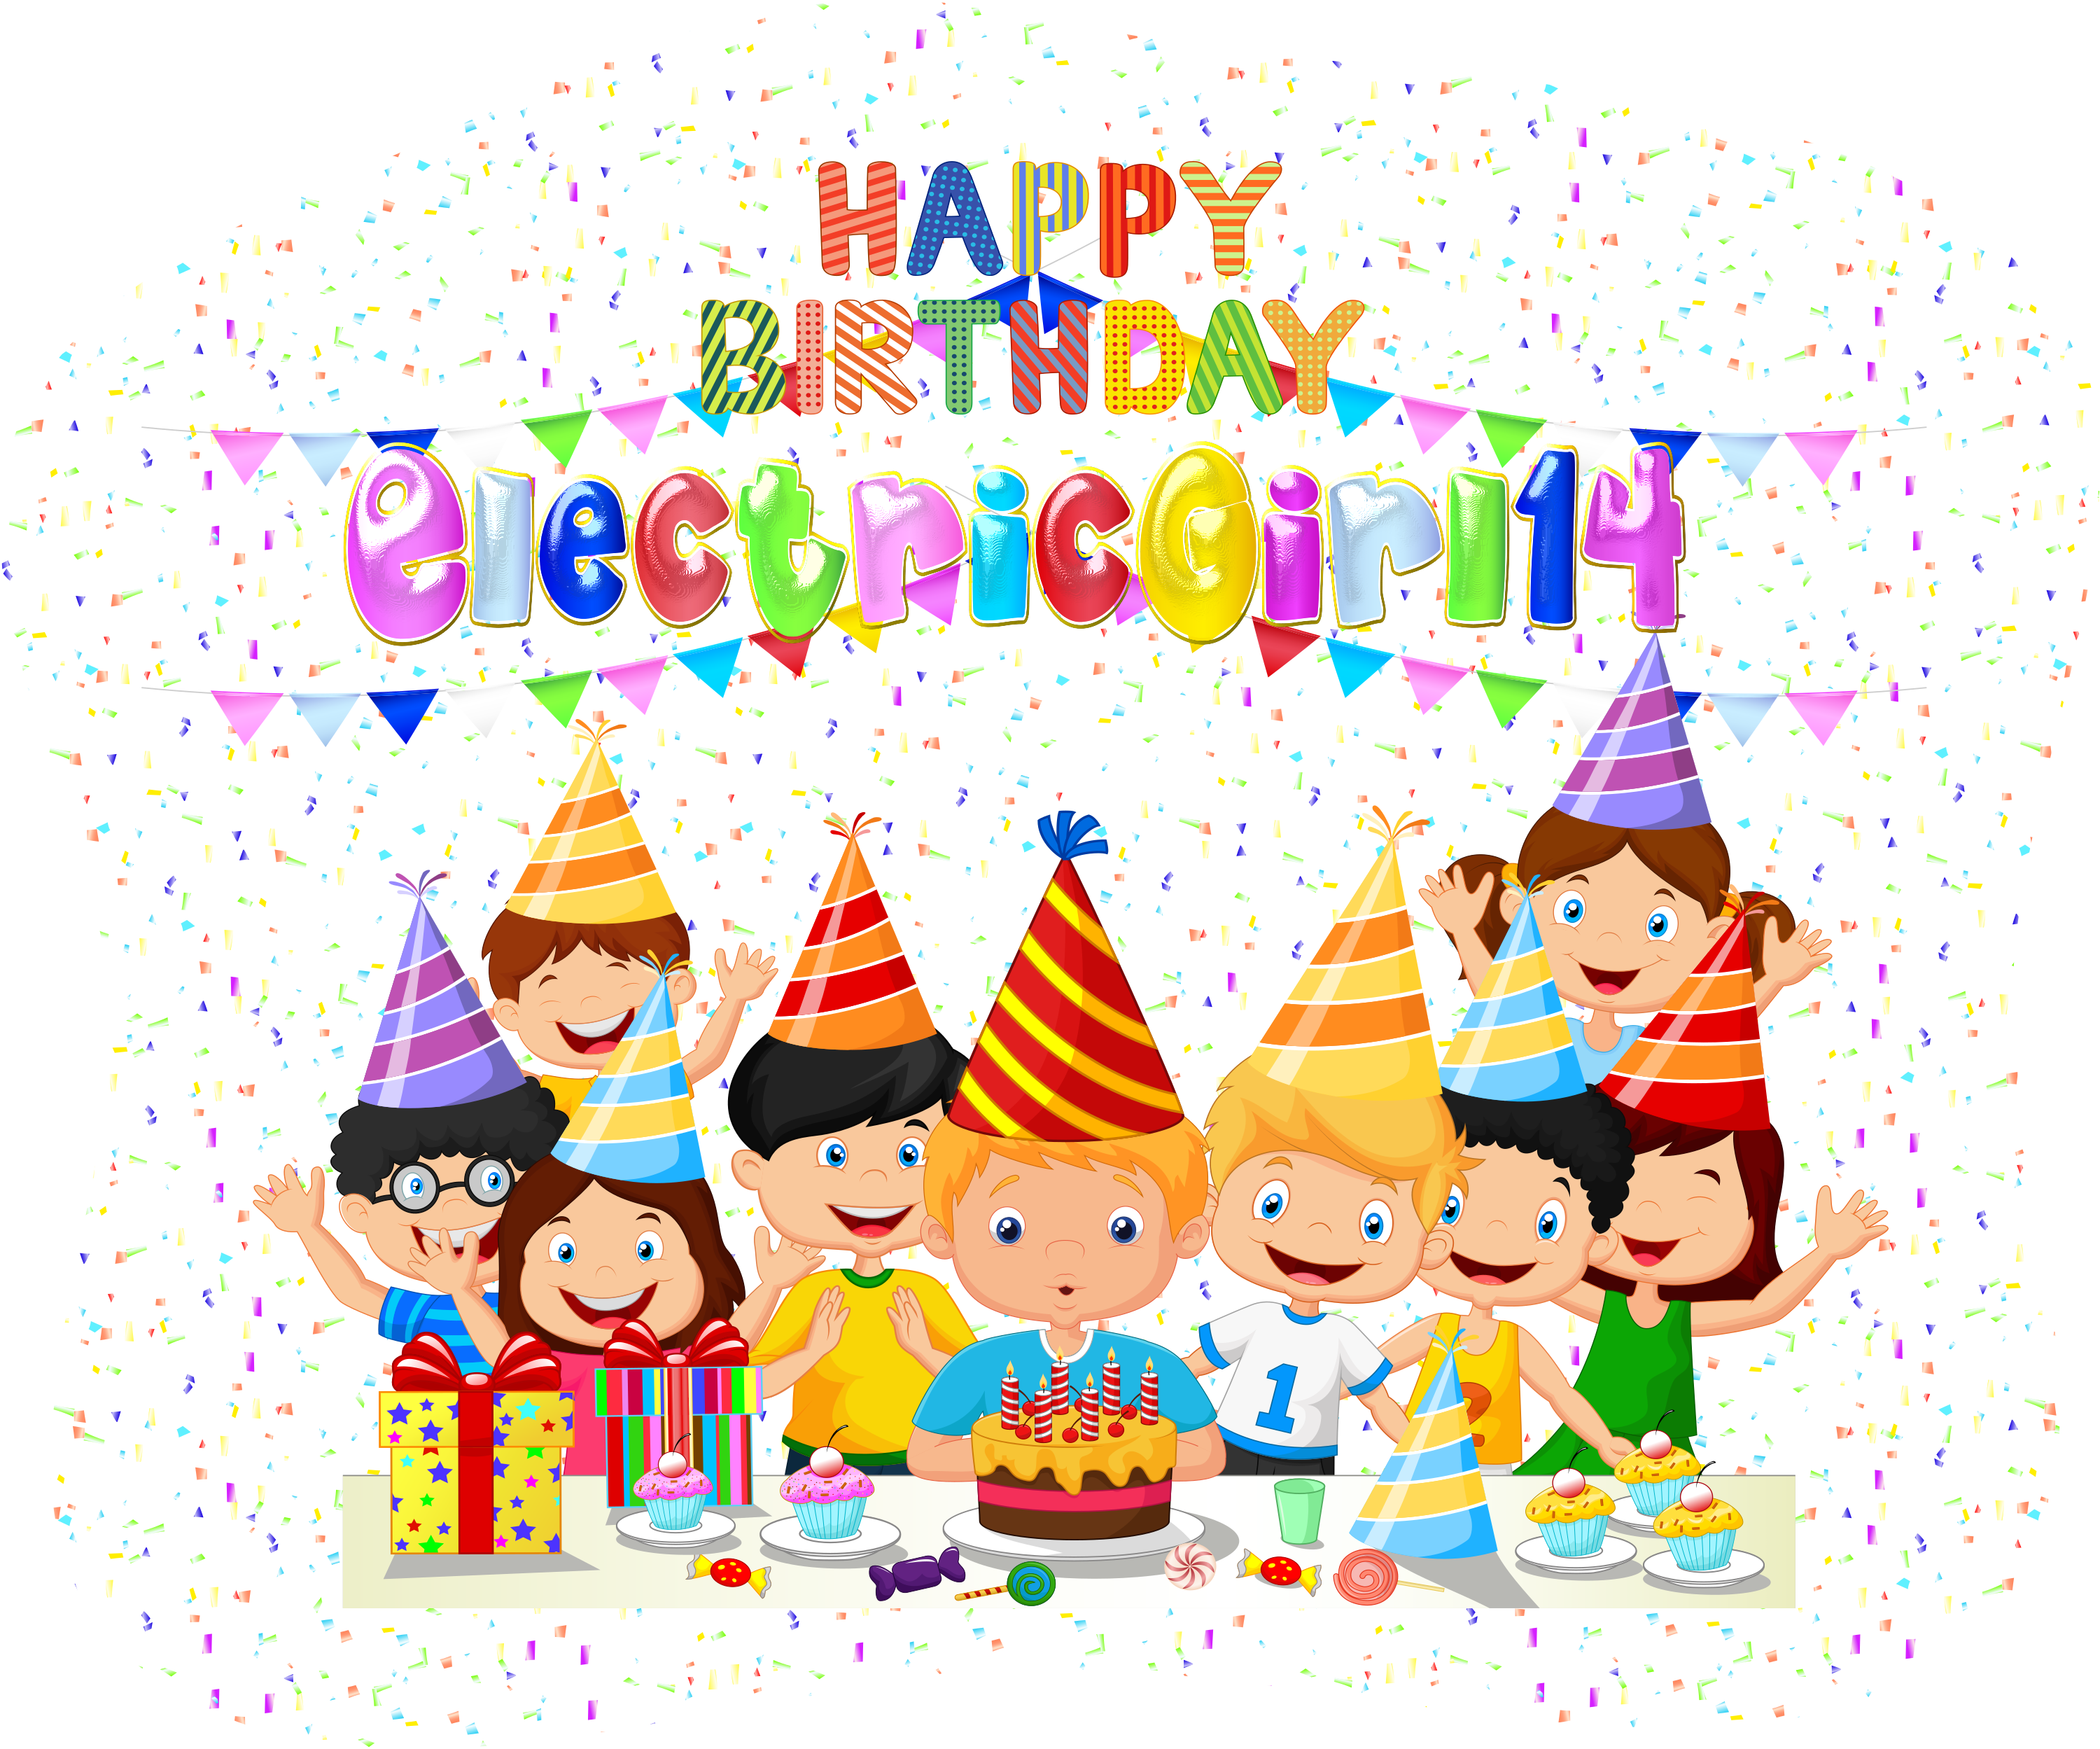 Happy Birthday Electricgirl14 By Creaciones Jean - Big Birthday Surprise Coloring Book (3000x2498)